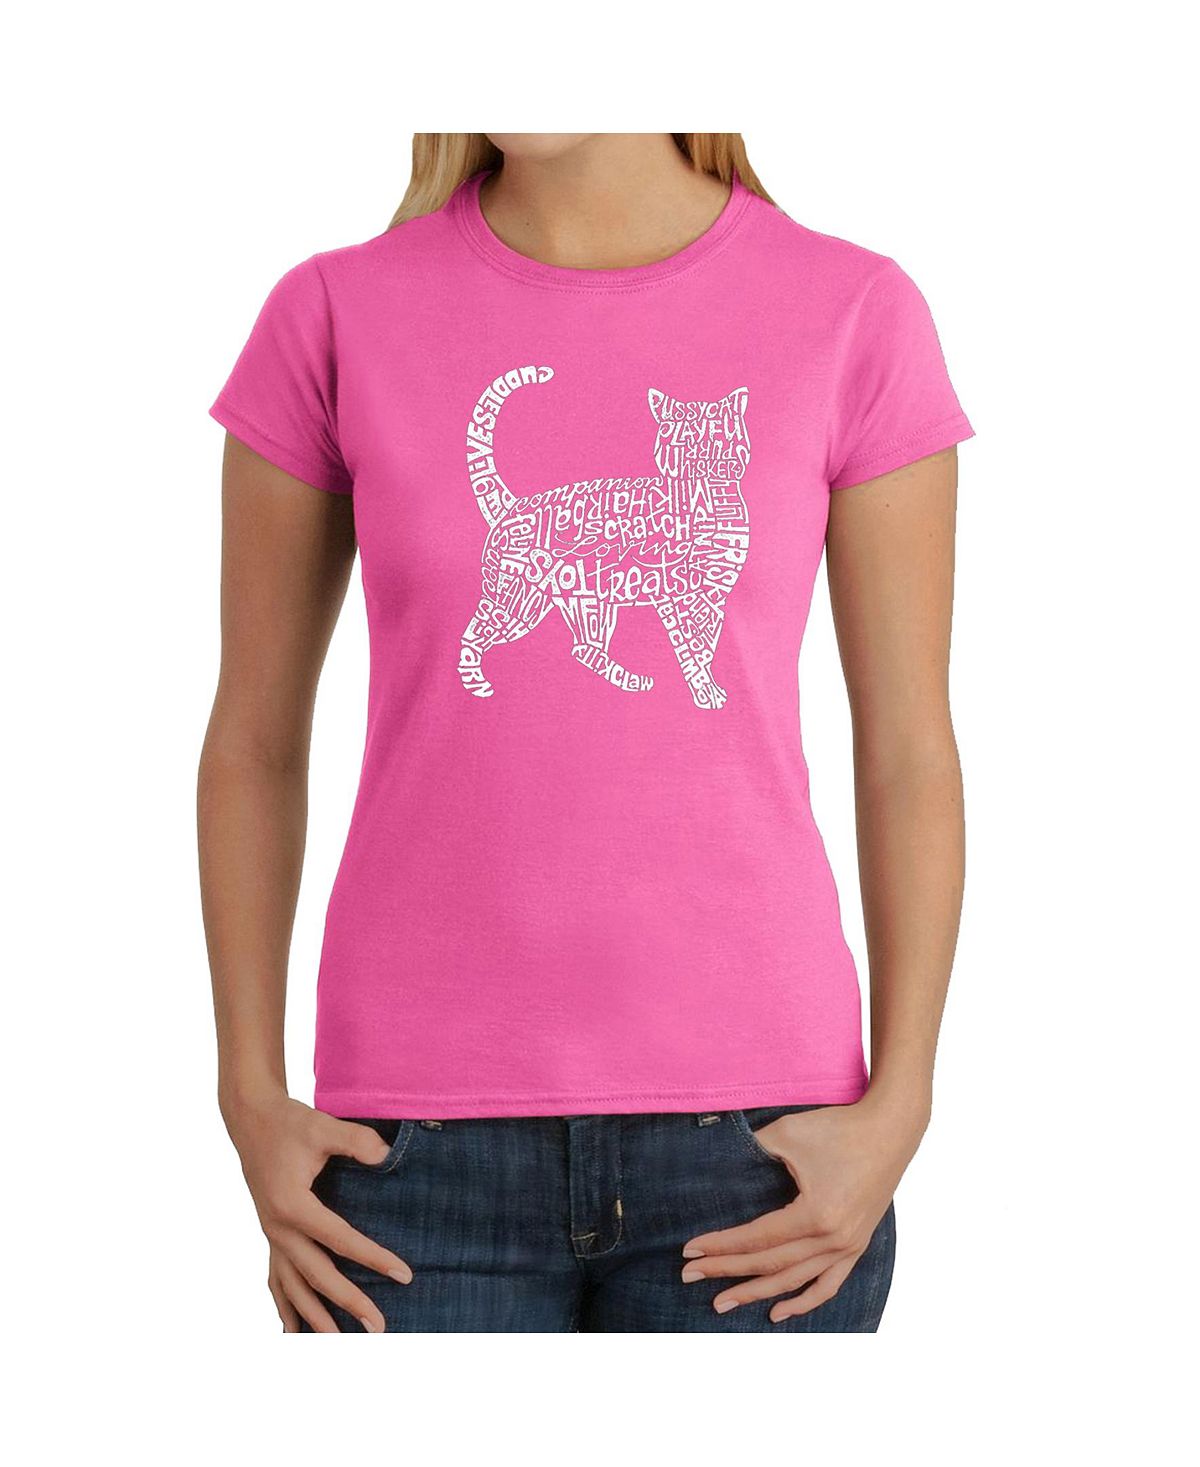 цена Женская футболка word art - кошка LA Pop Art, розовый